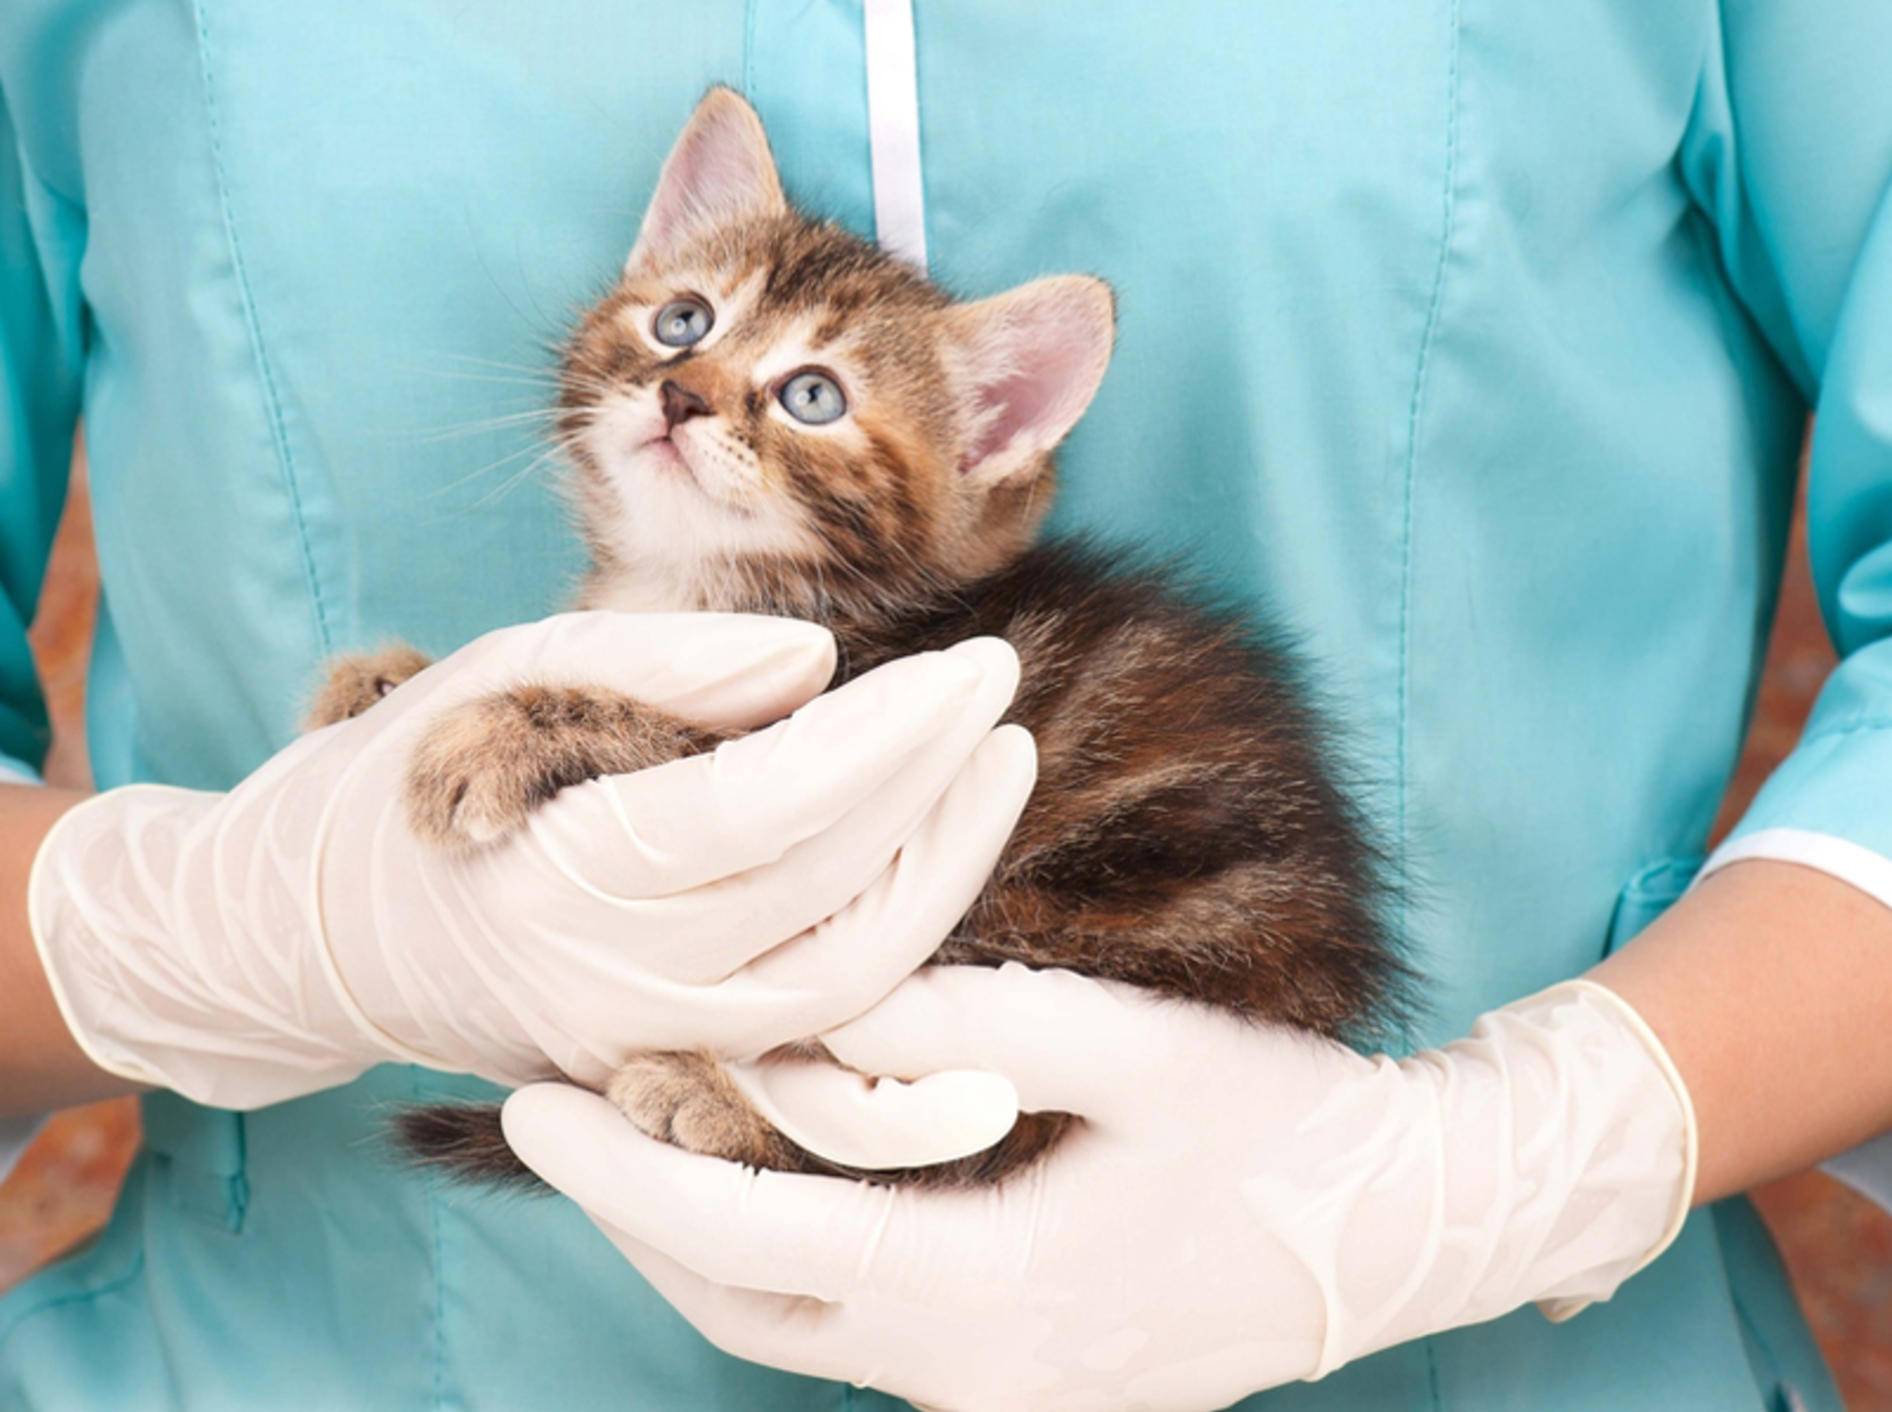 Will der Tierarzt die Katze genauer untersuchen, ist eine Ultraschalluntersuchung oft sinnvoll - Bild: Shutterstock / Lubava